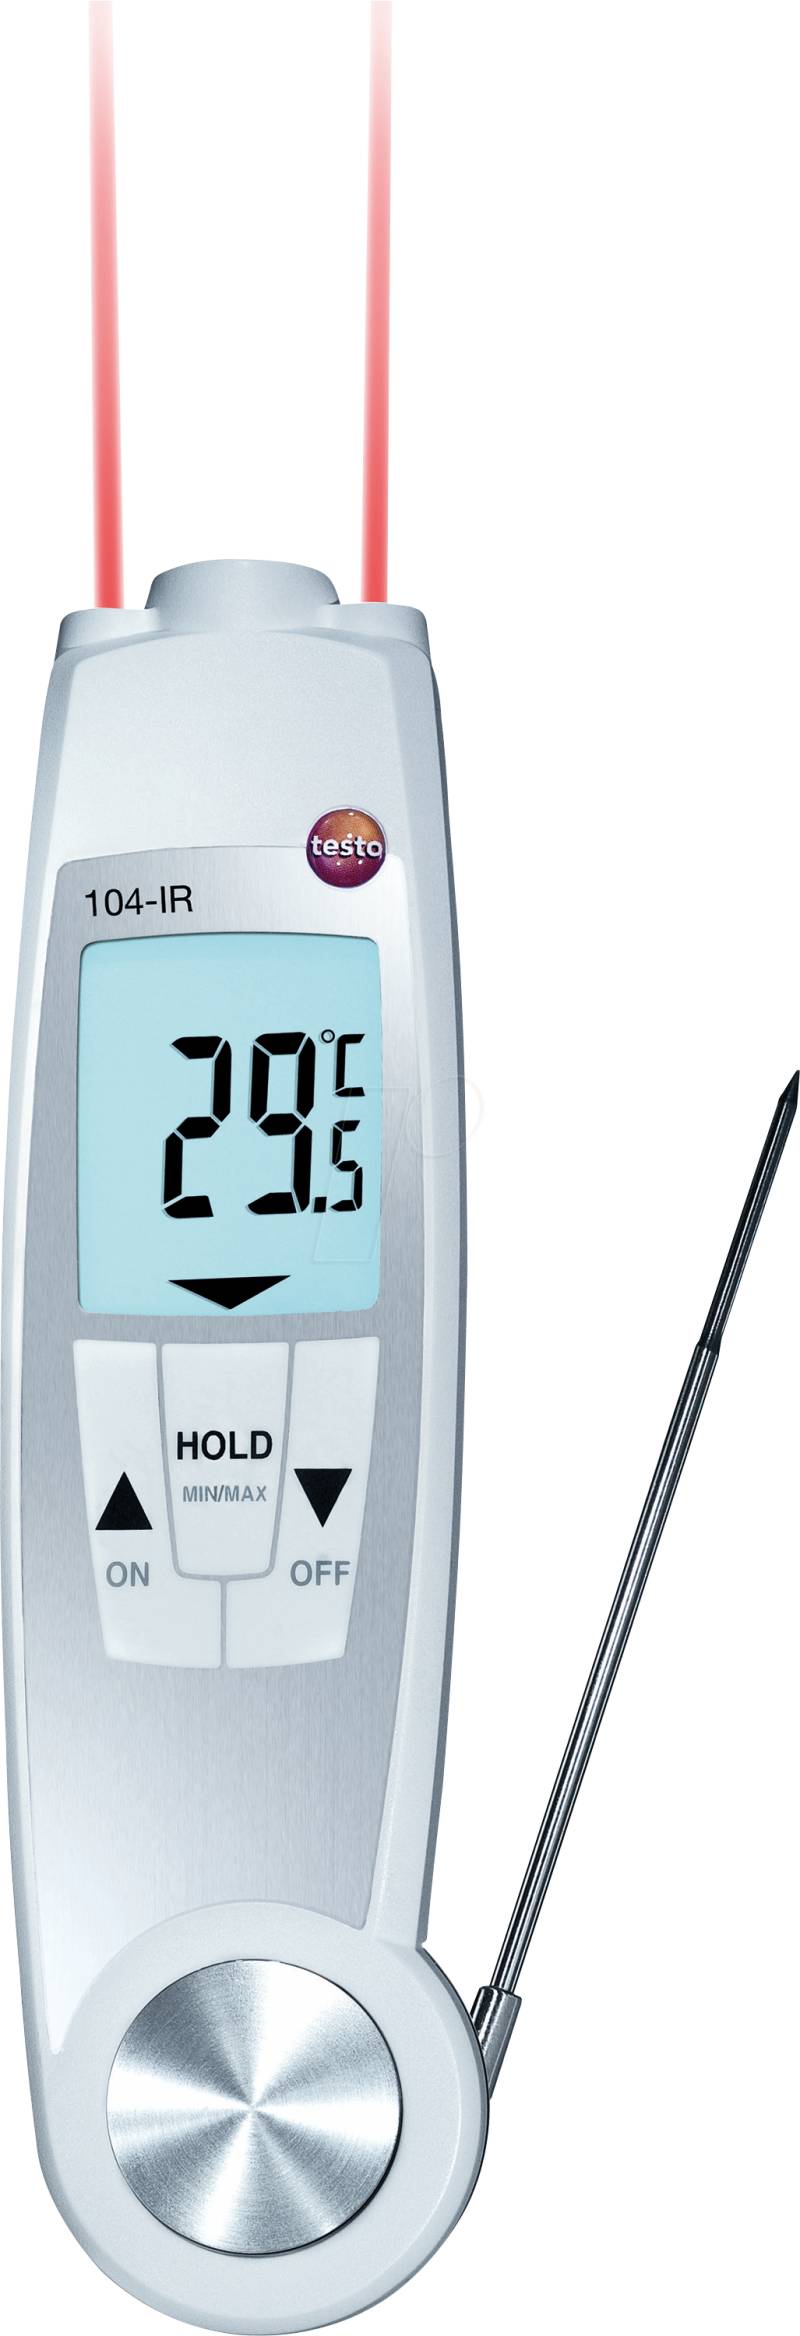 TESTO 0560 1040 - Einstech-Infrarot-Thermometer testo 104-IR, -50 bis +250 °C von TESTO